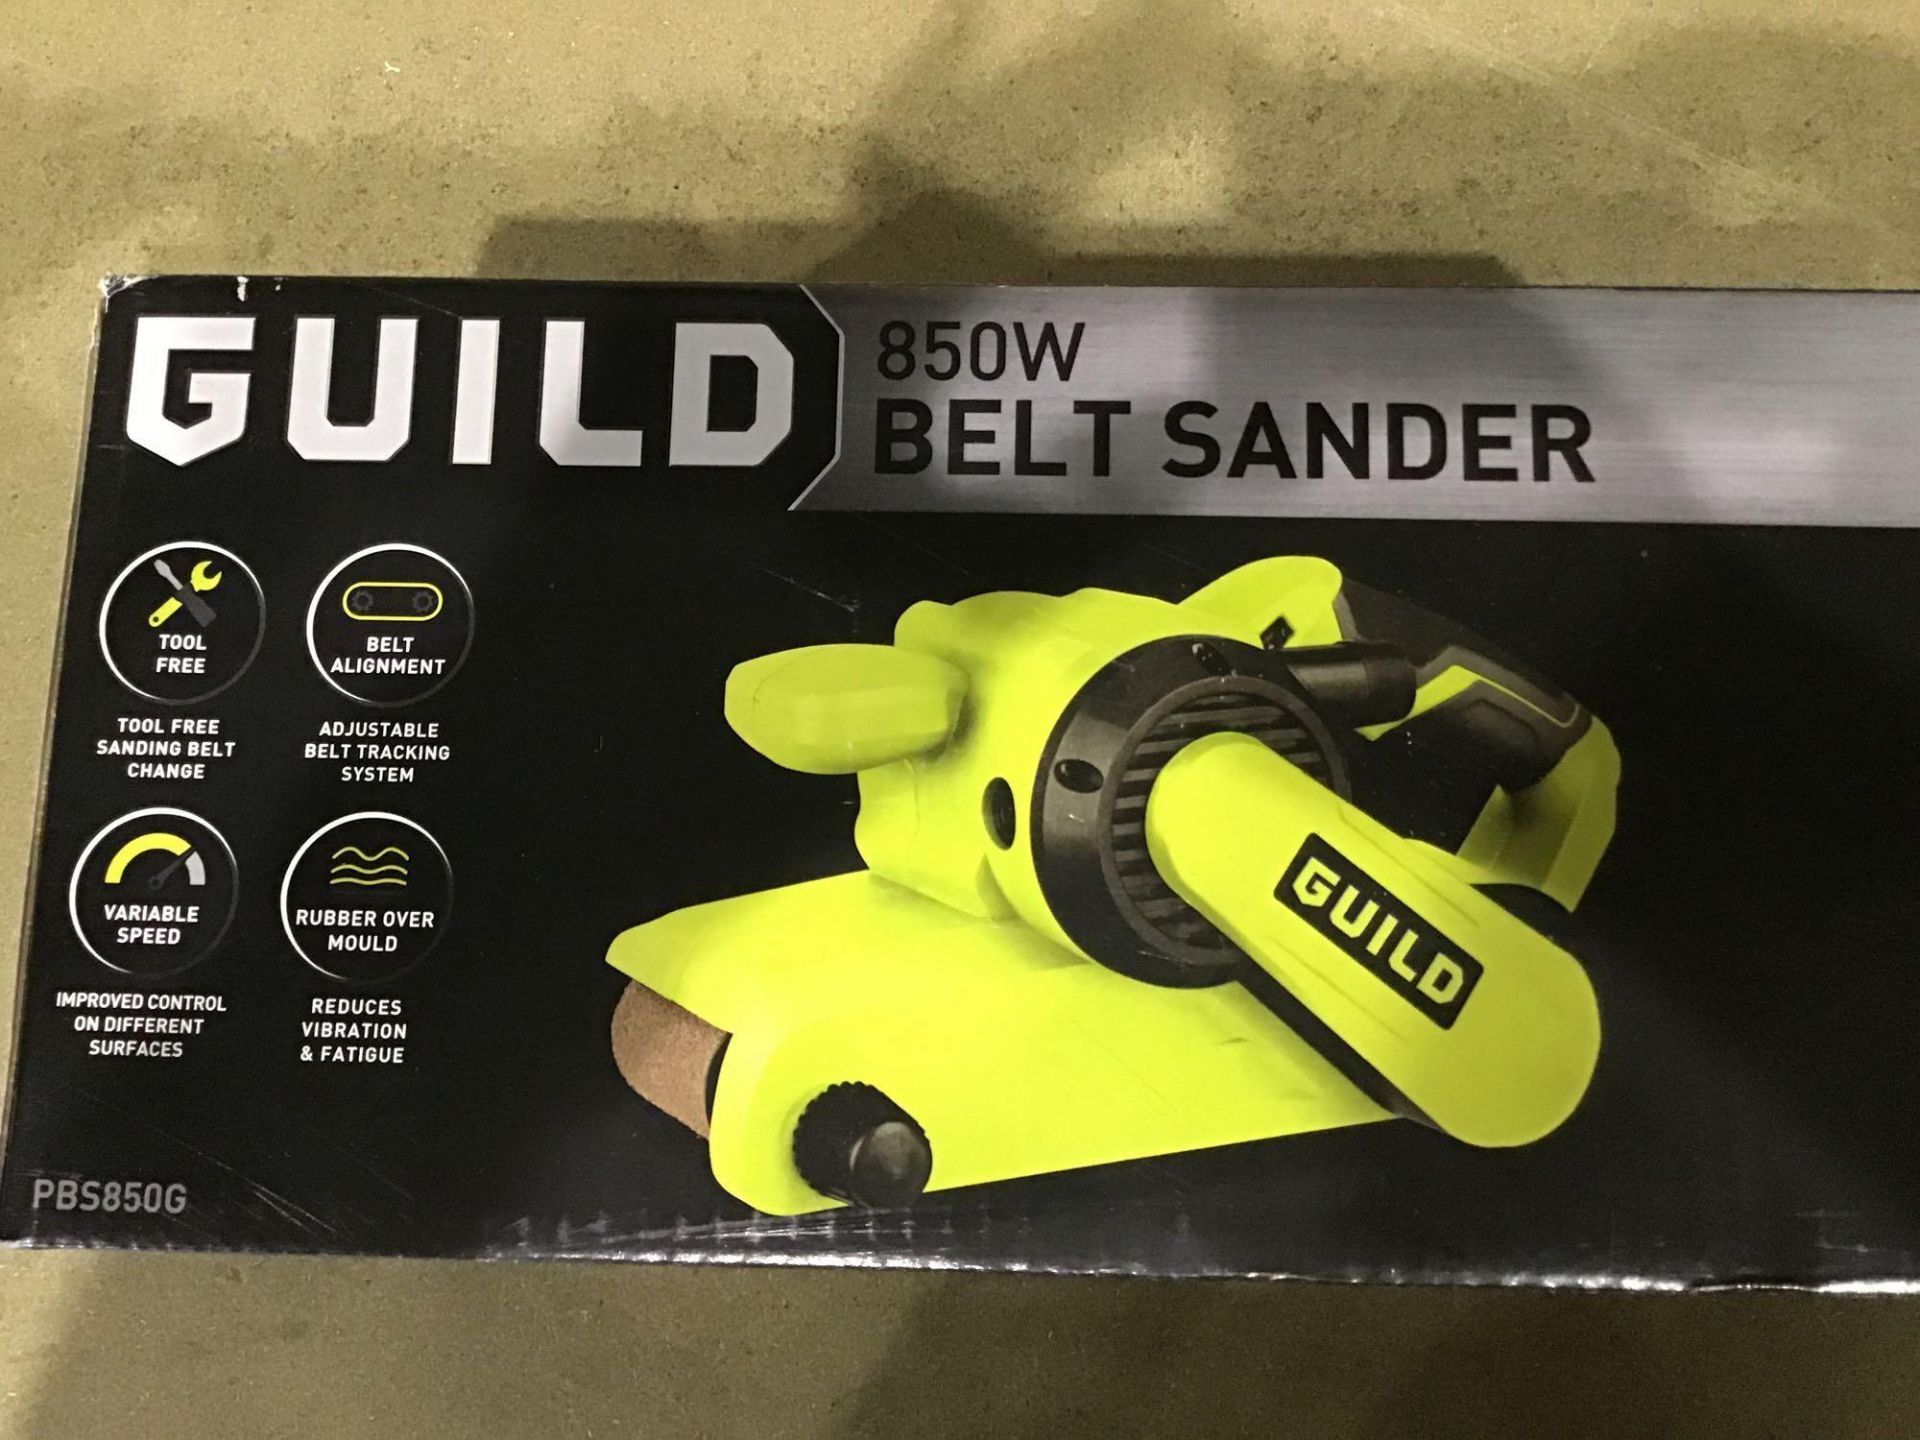 Guild Belt Sander - 850W - £45.00 RRP - Image 2 of 3